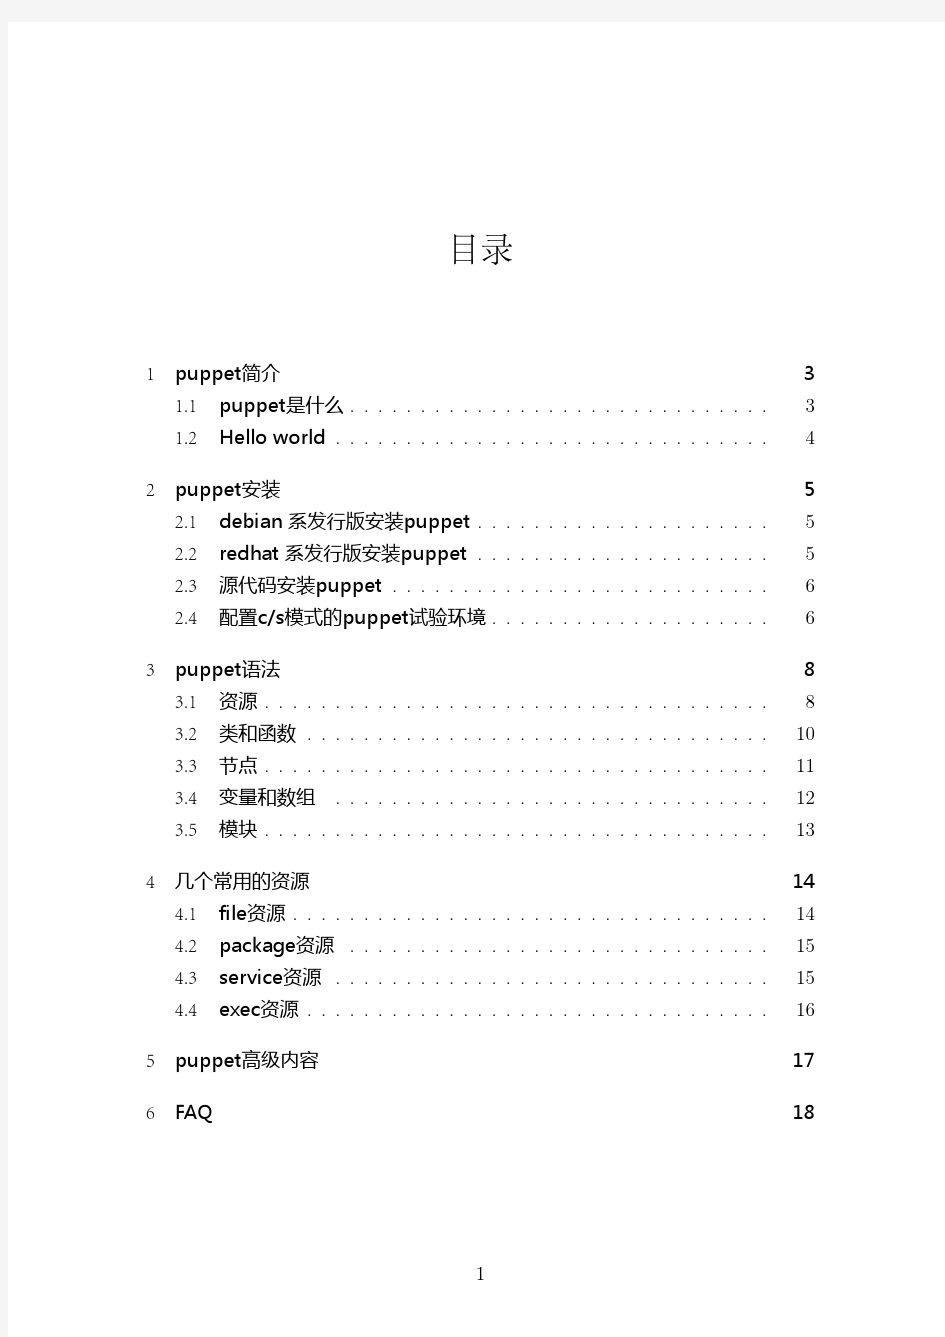 puppet最经典中文手册资料2010